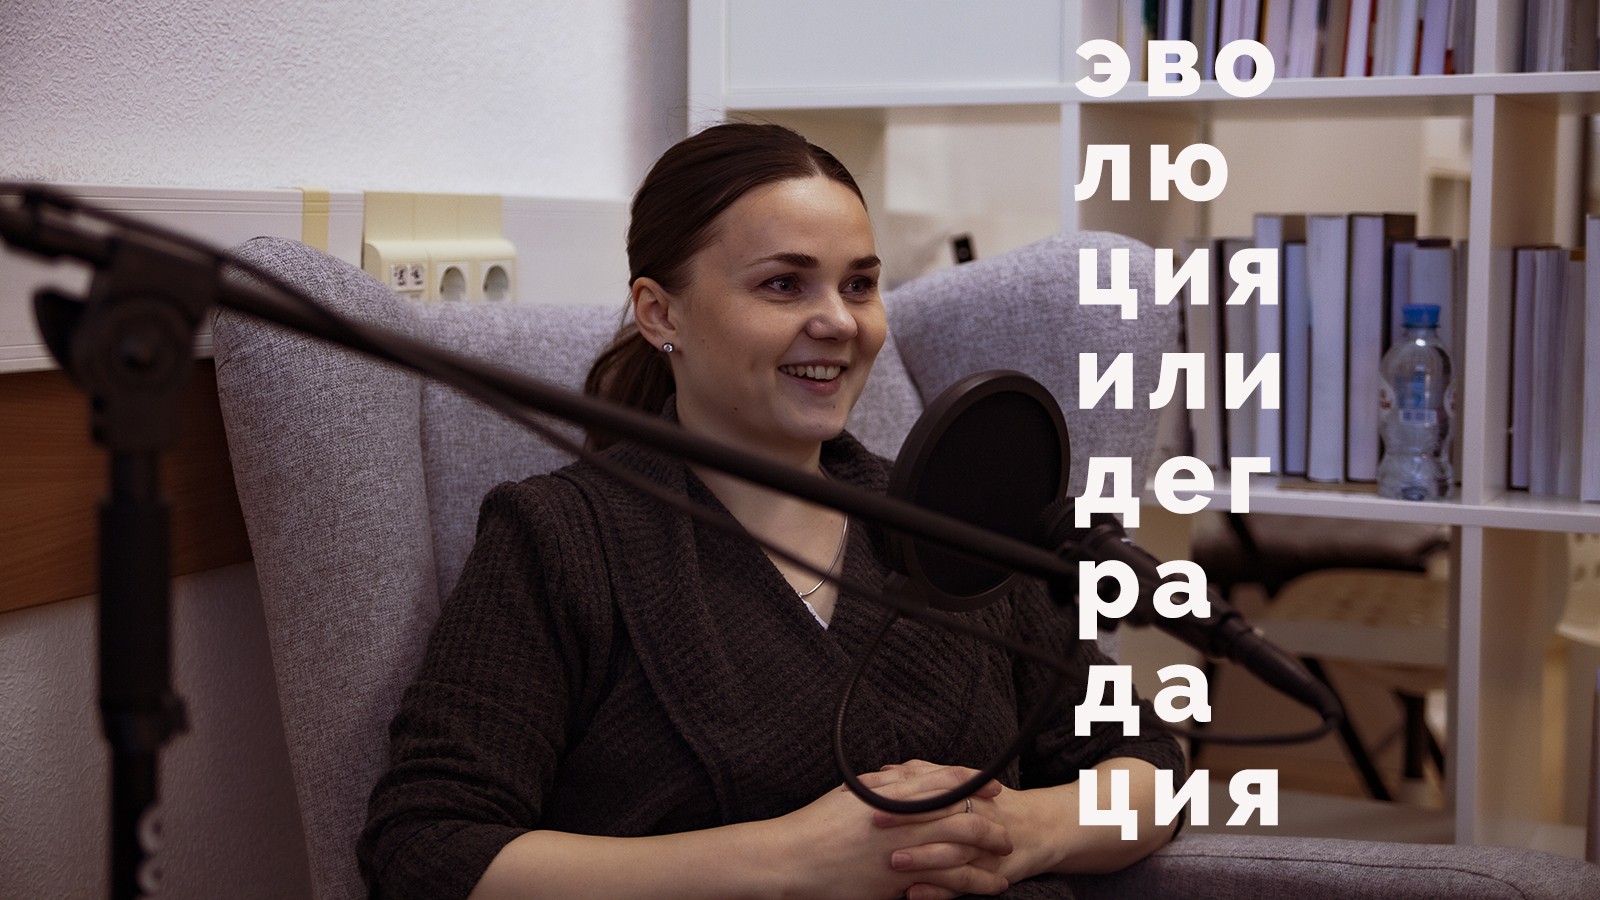 Руководитель должен научиться справлять со своим стрессом. Елена Кутовая - о внутренних коммуникациях в кризисе.